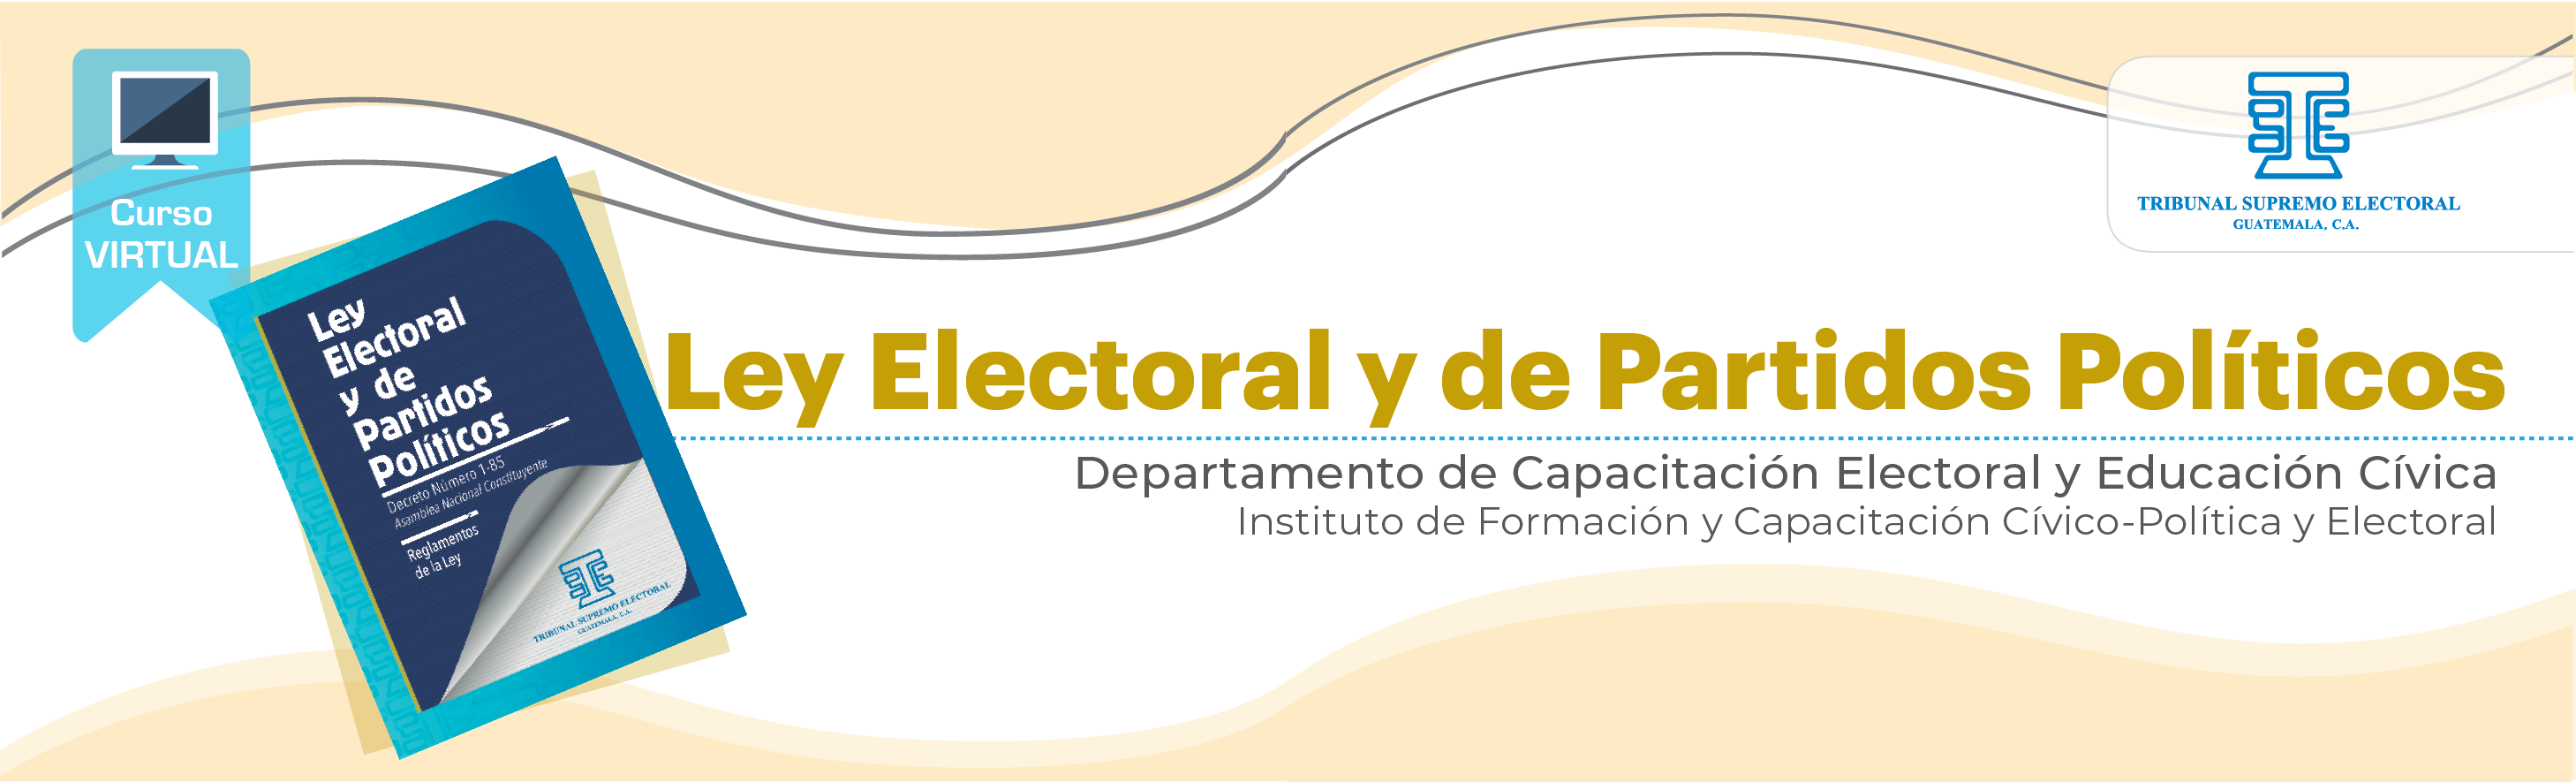 Ley Electoral y de Partidos Políticos 2022 K